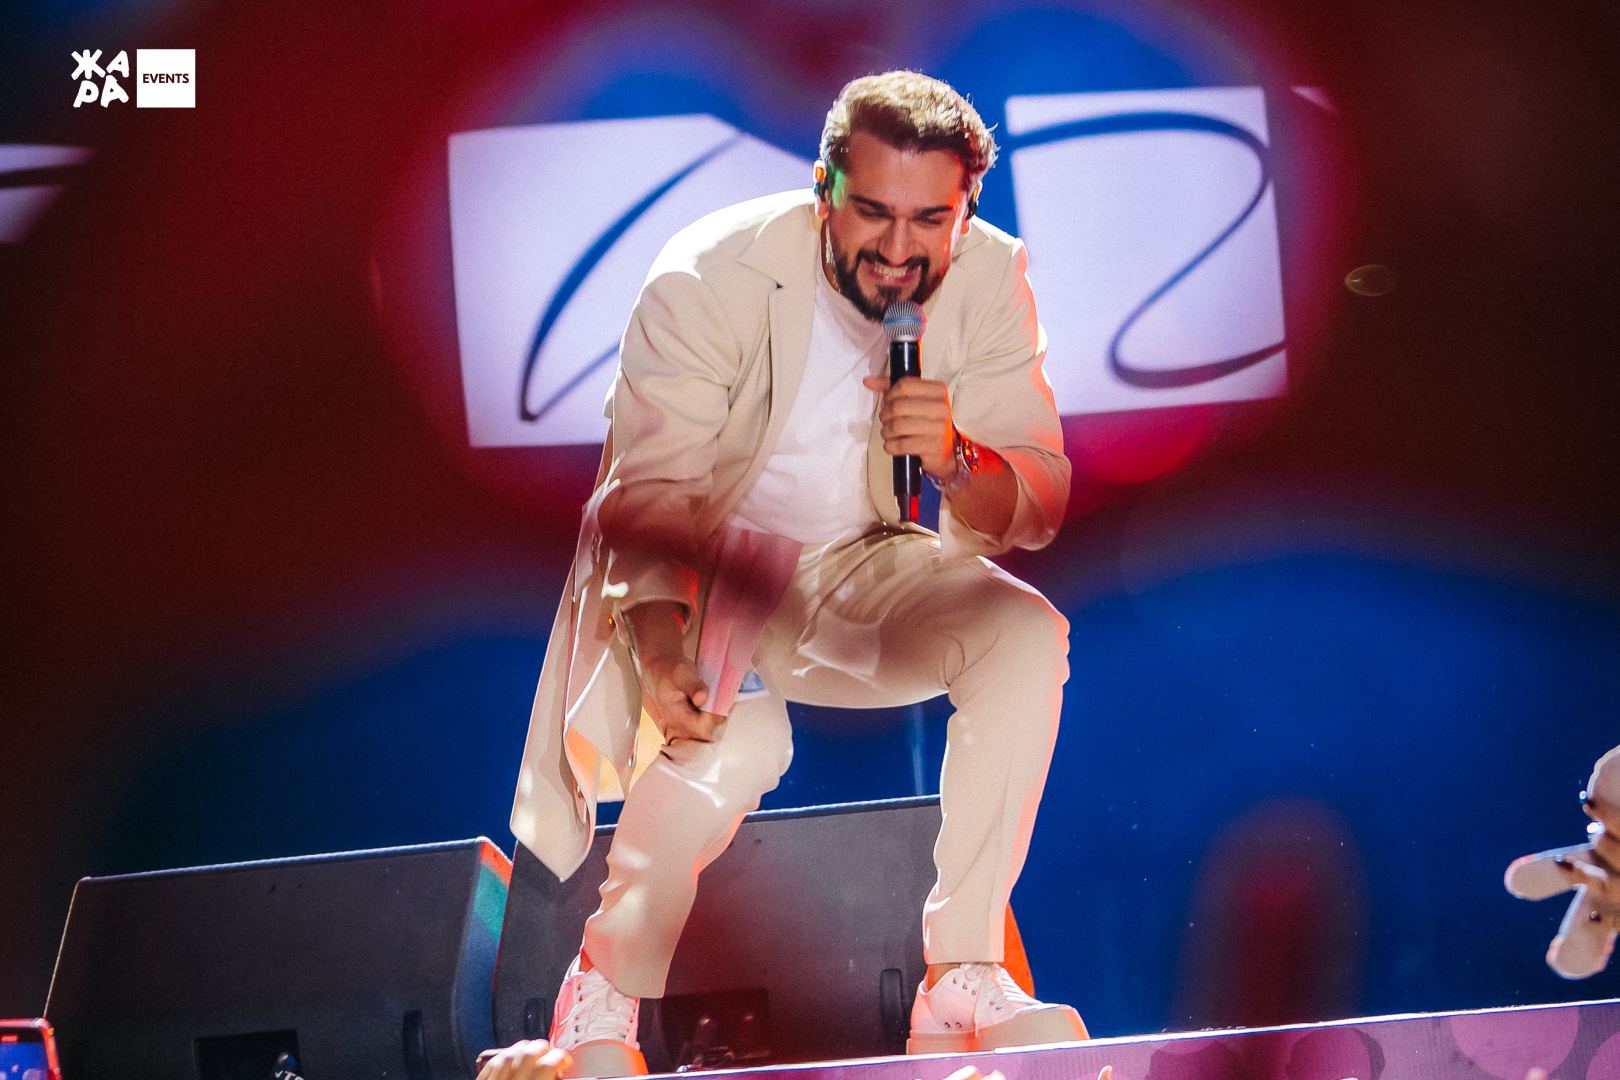 Невозможно передать словами! Яркие эмоции и сюрпризы на концерте Jony в Баку  (ФОТО/ВИДЕО)